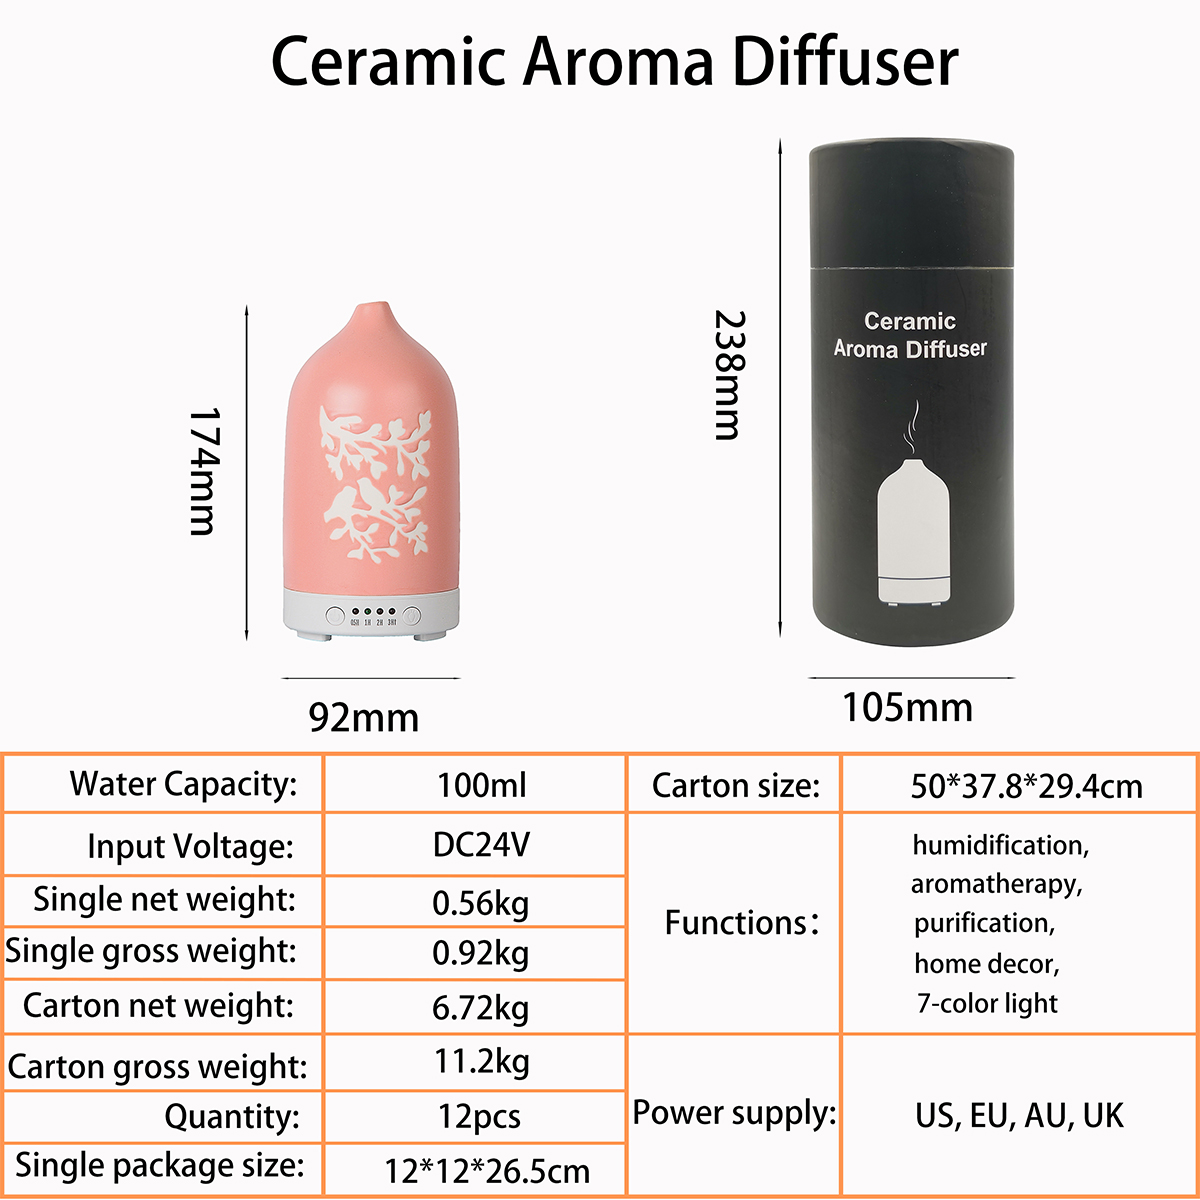 Ceramic aroma diffusers